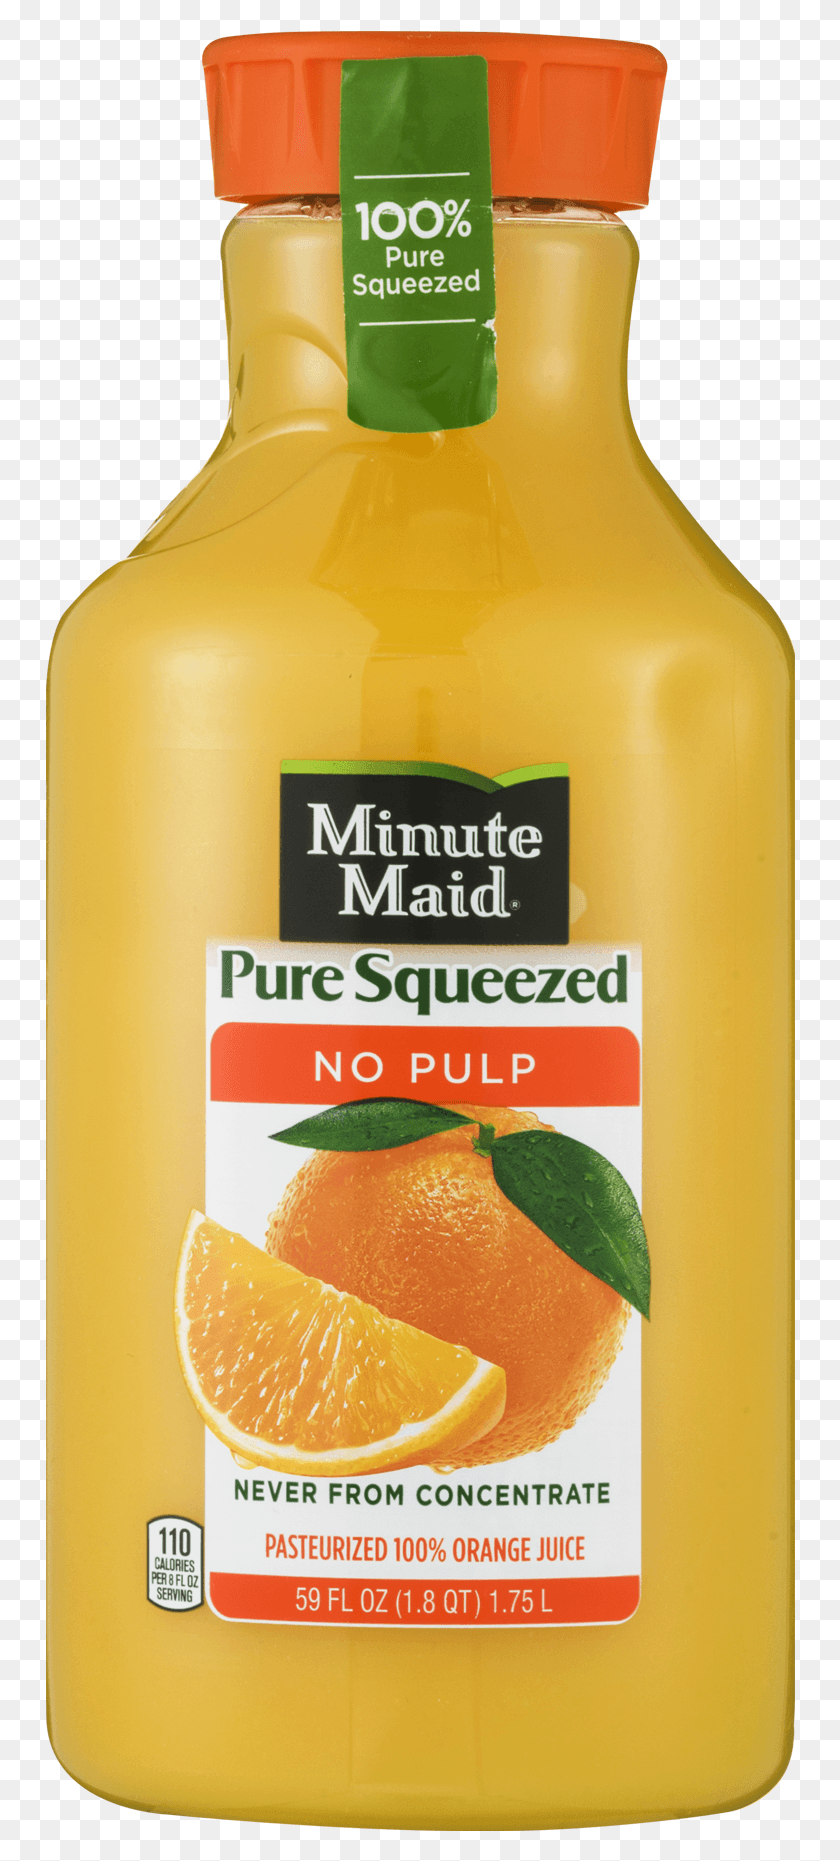 750x1801 Minute Maid Чистый Выжатый Апельсиновый Сок Без Мякоти 100 Апельсиновый Сок Minute Maid Чистый Выжатый Апельсиновый Сок Без Мякоти 52 Fl, Бутылка, Растение, Сок Hd Png Скачать